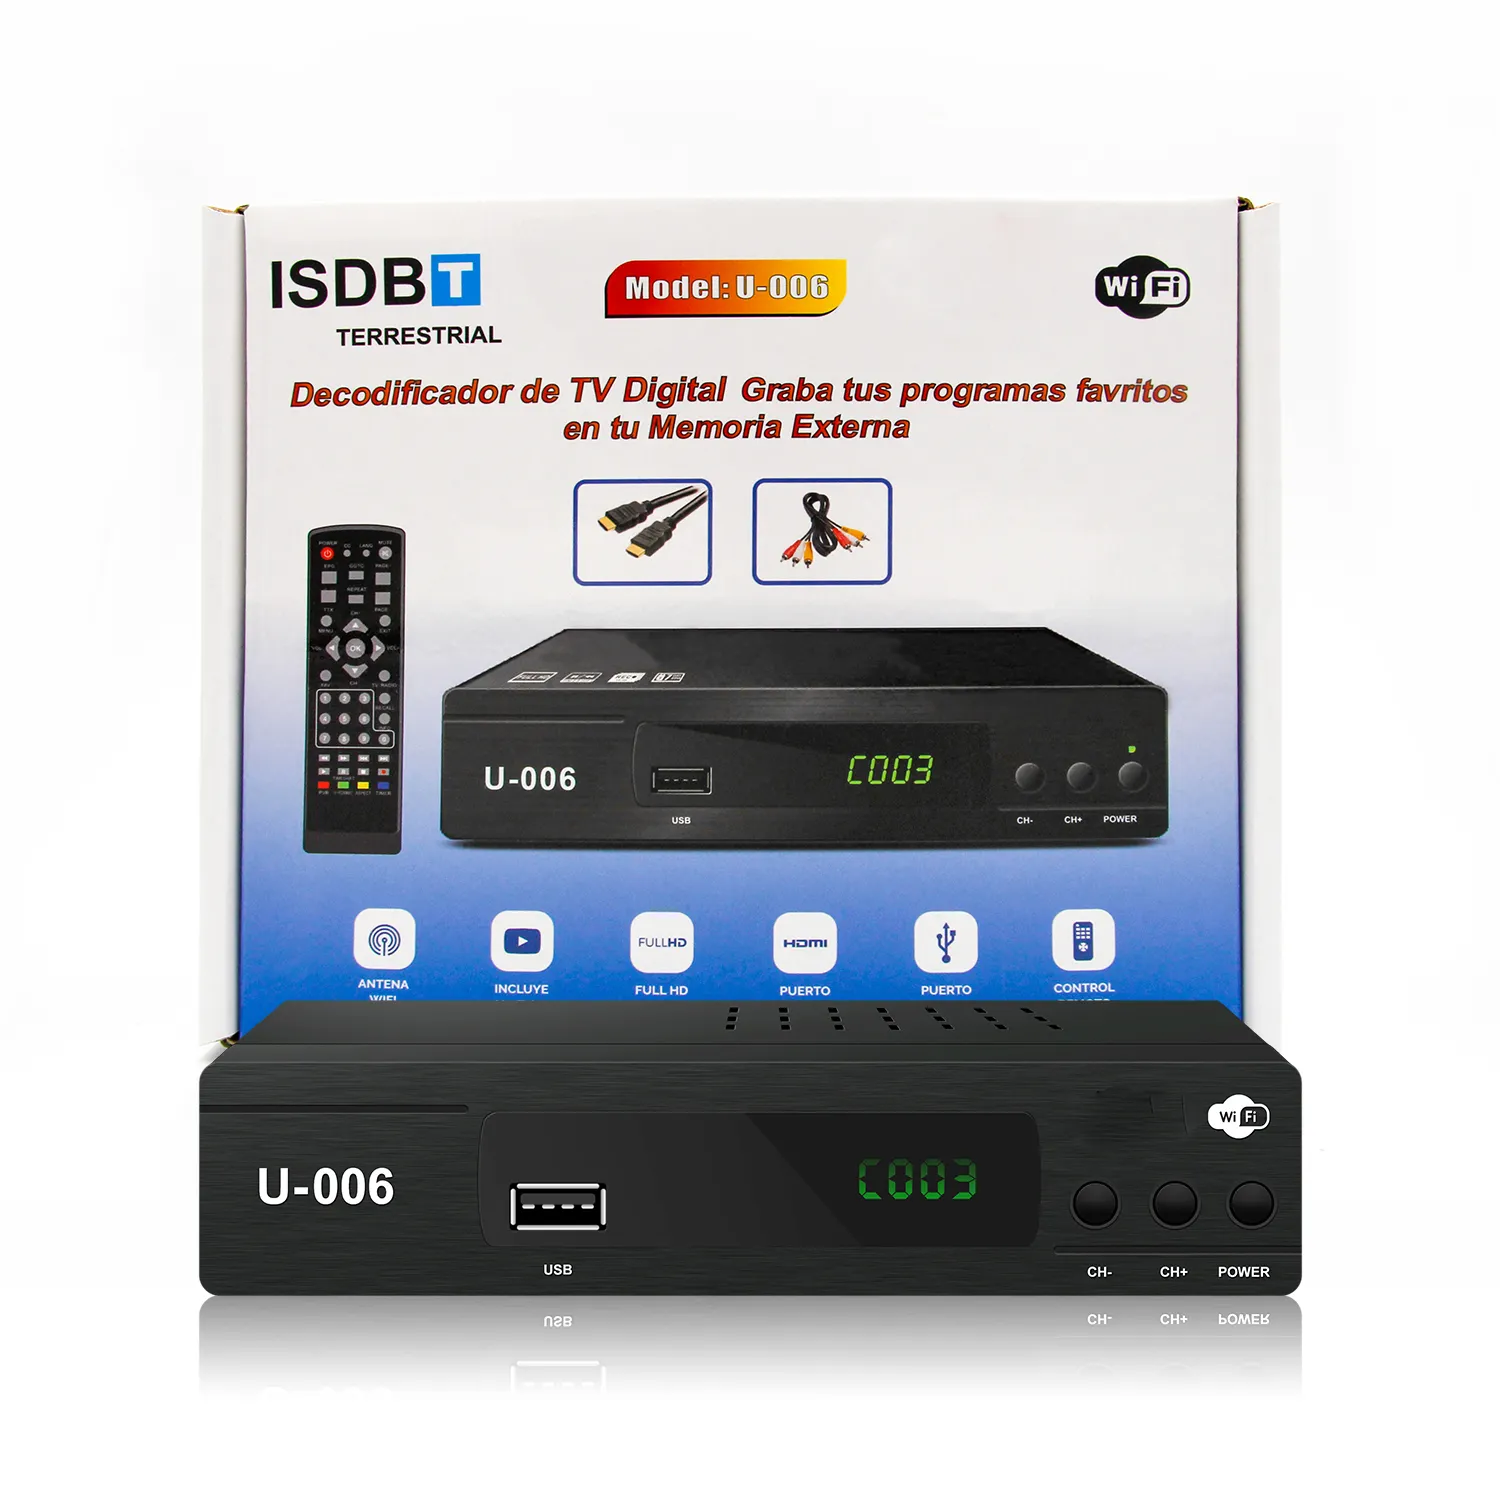 HD mpeg4 ISDB-T empfänger mit PVR USB HD Doppel-Tuner TV-Tuner Empfänger ISDBT Decoder Set Top Box